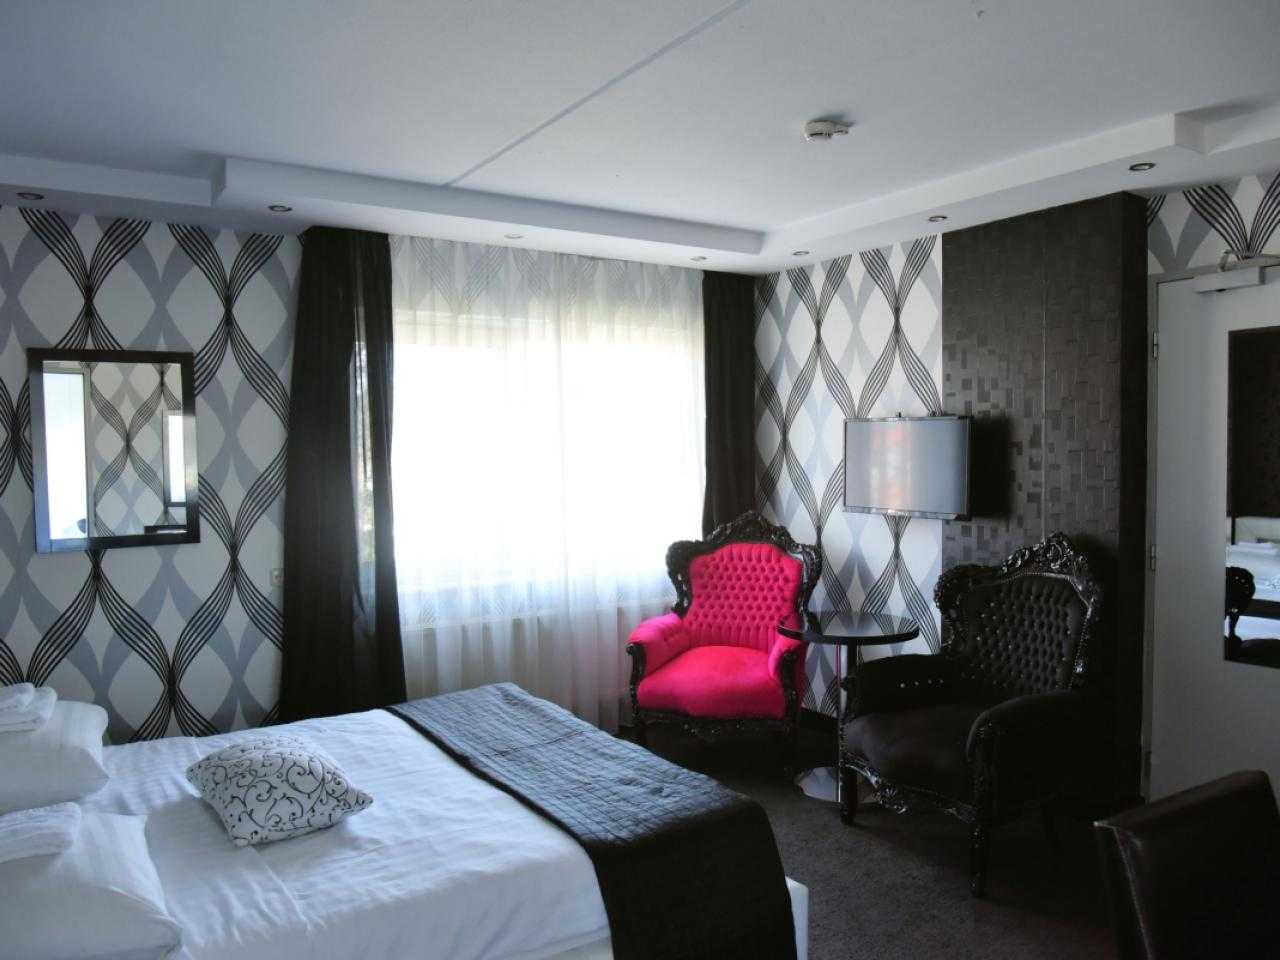 Interieur hotelkamer hotel Zwanenburg met rode stoel in de hoek